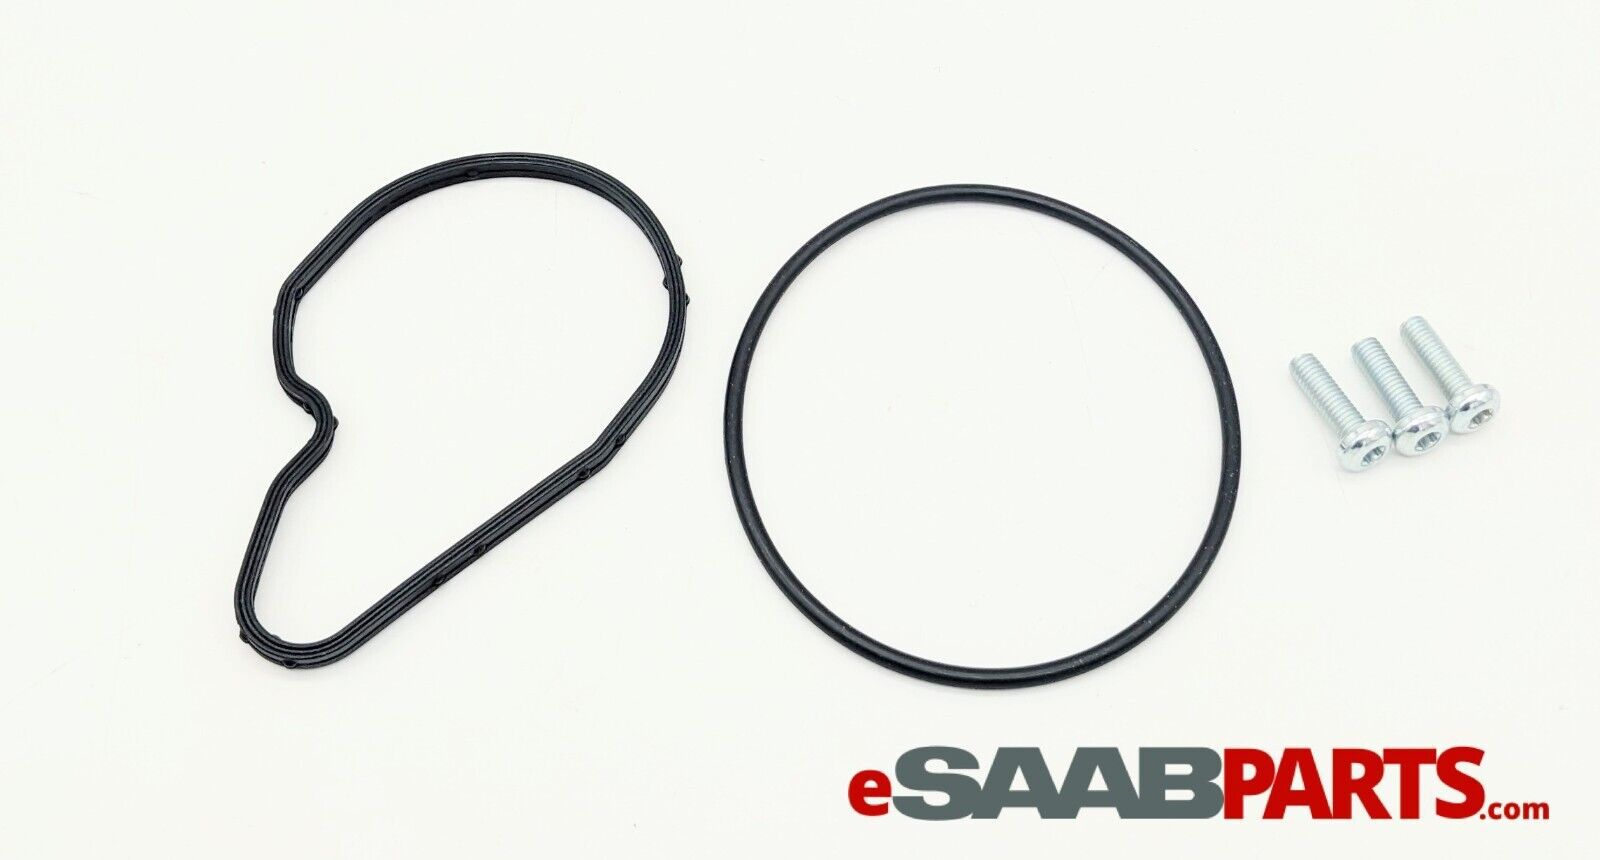 适用于全新 Saab 9-3 制动真空泵 O 形环密封套件 (2003-2011 2.0